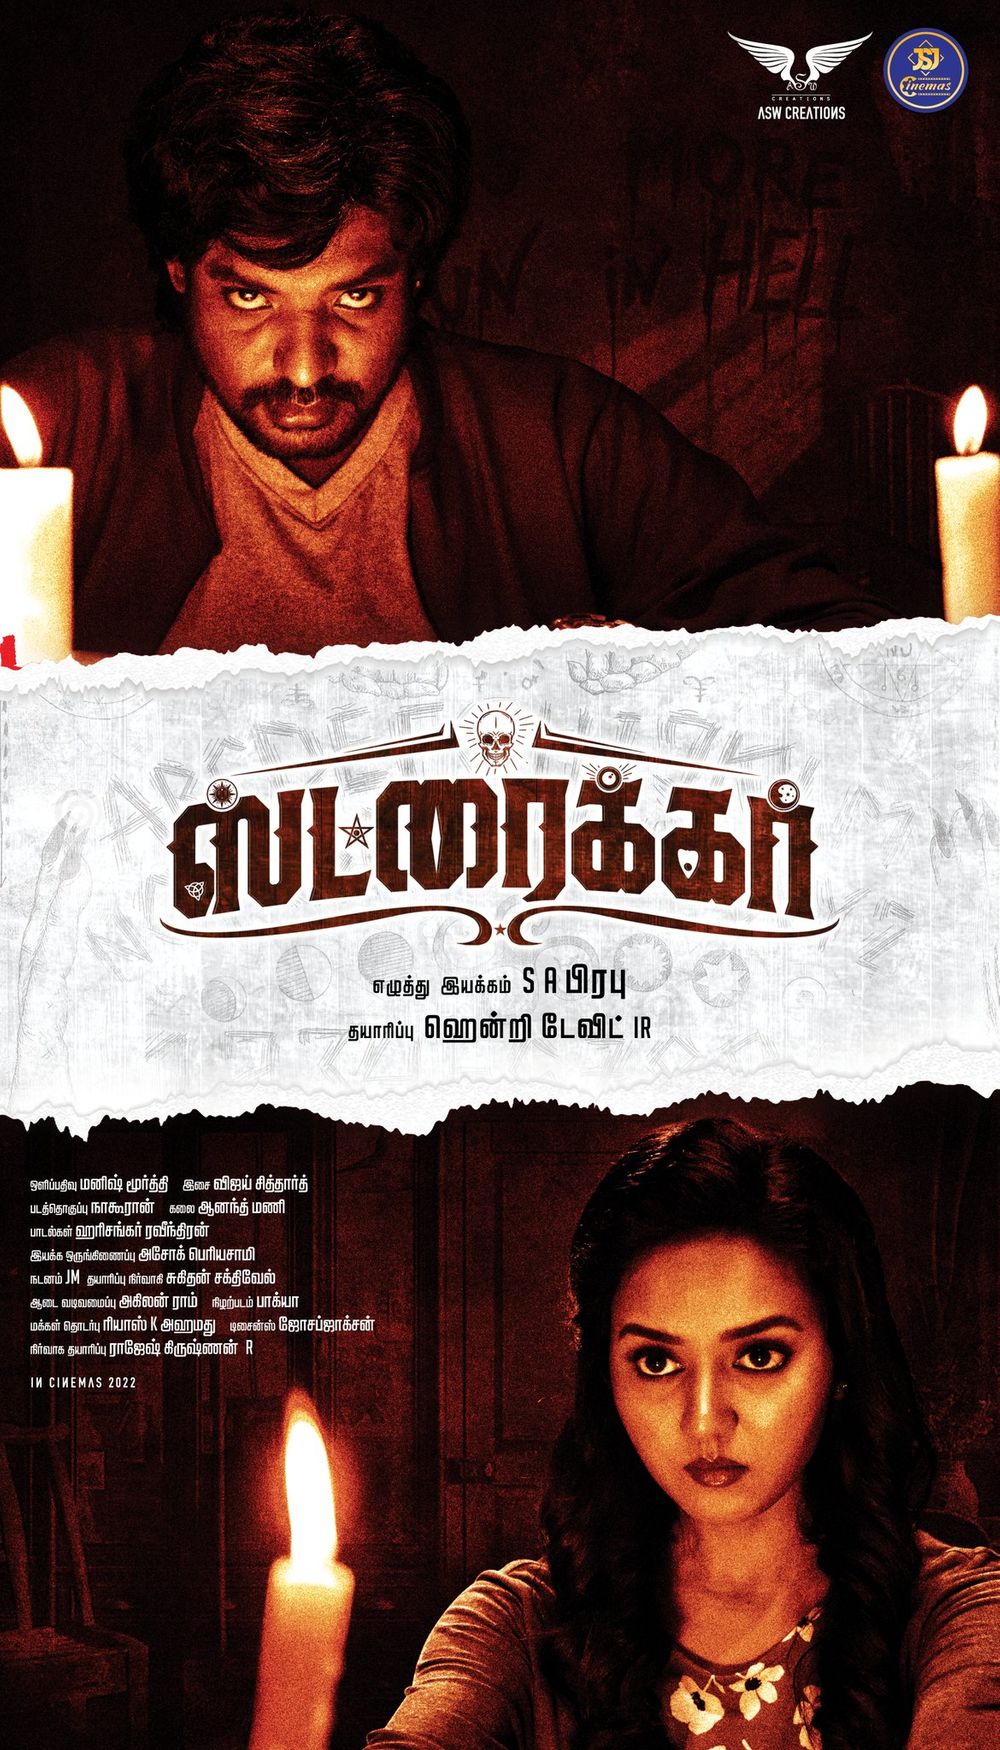 Striker Tamil Movie Review